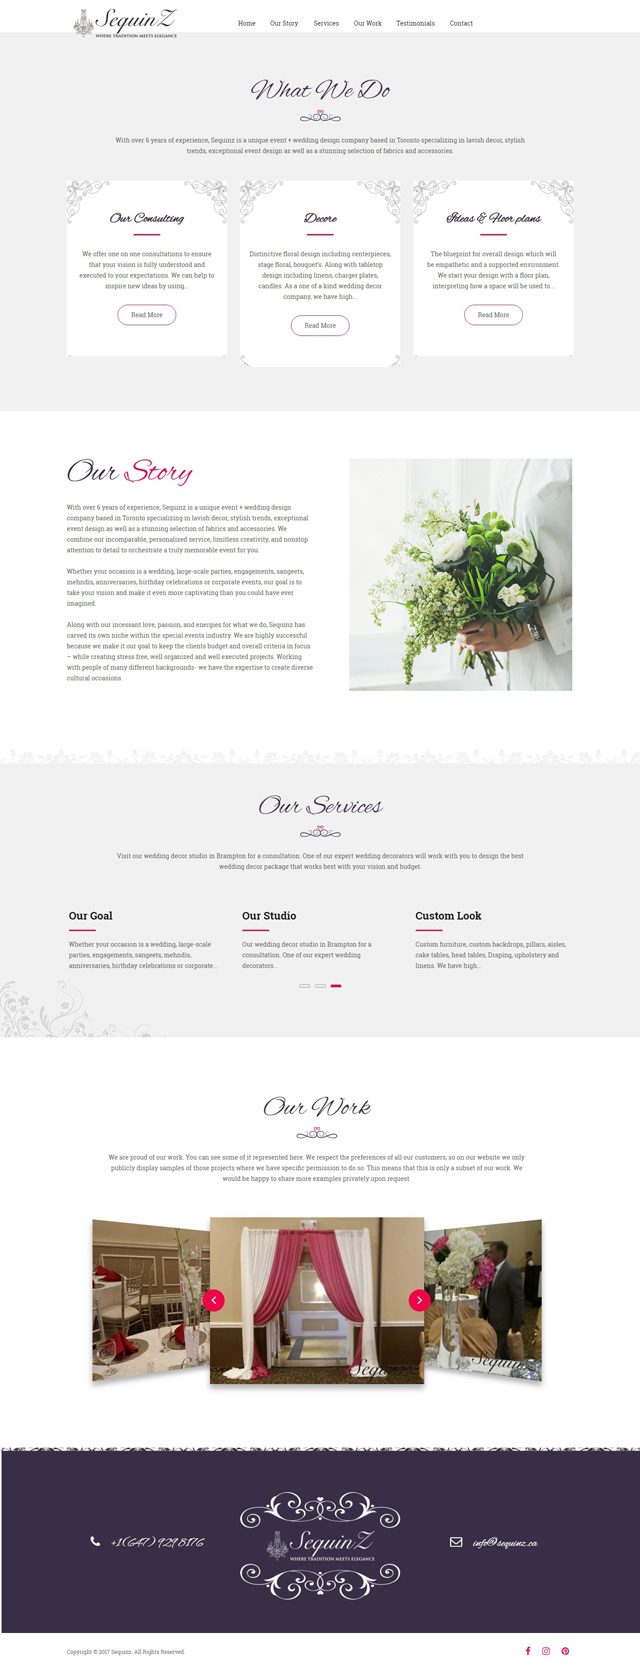 sequinz.ca - Homepage